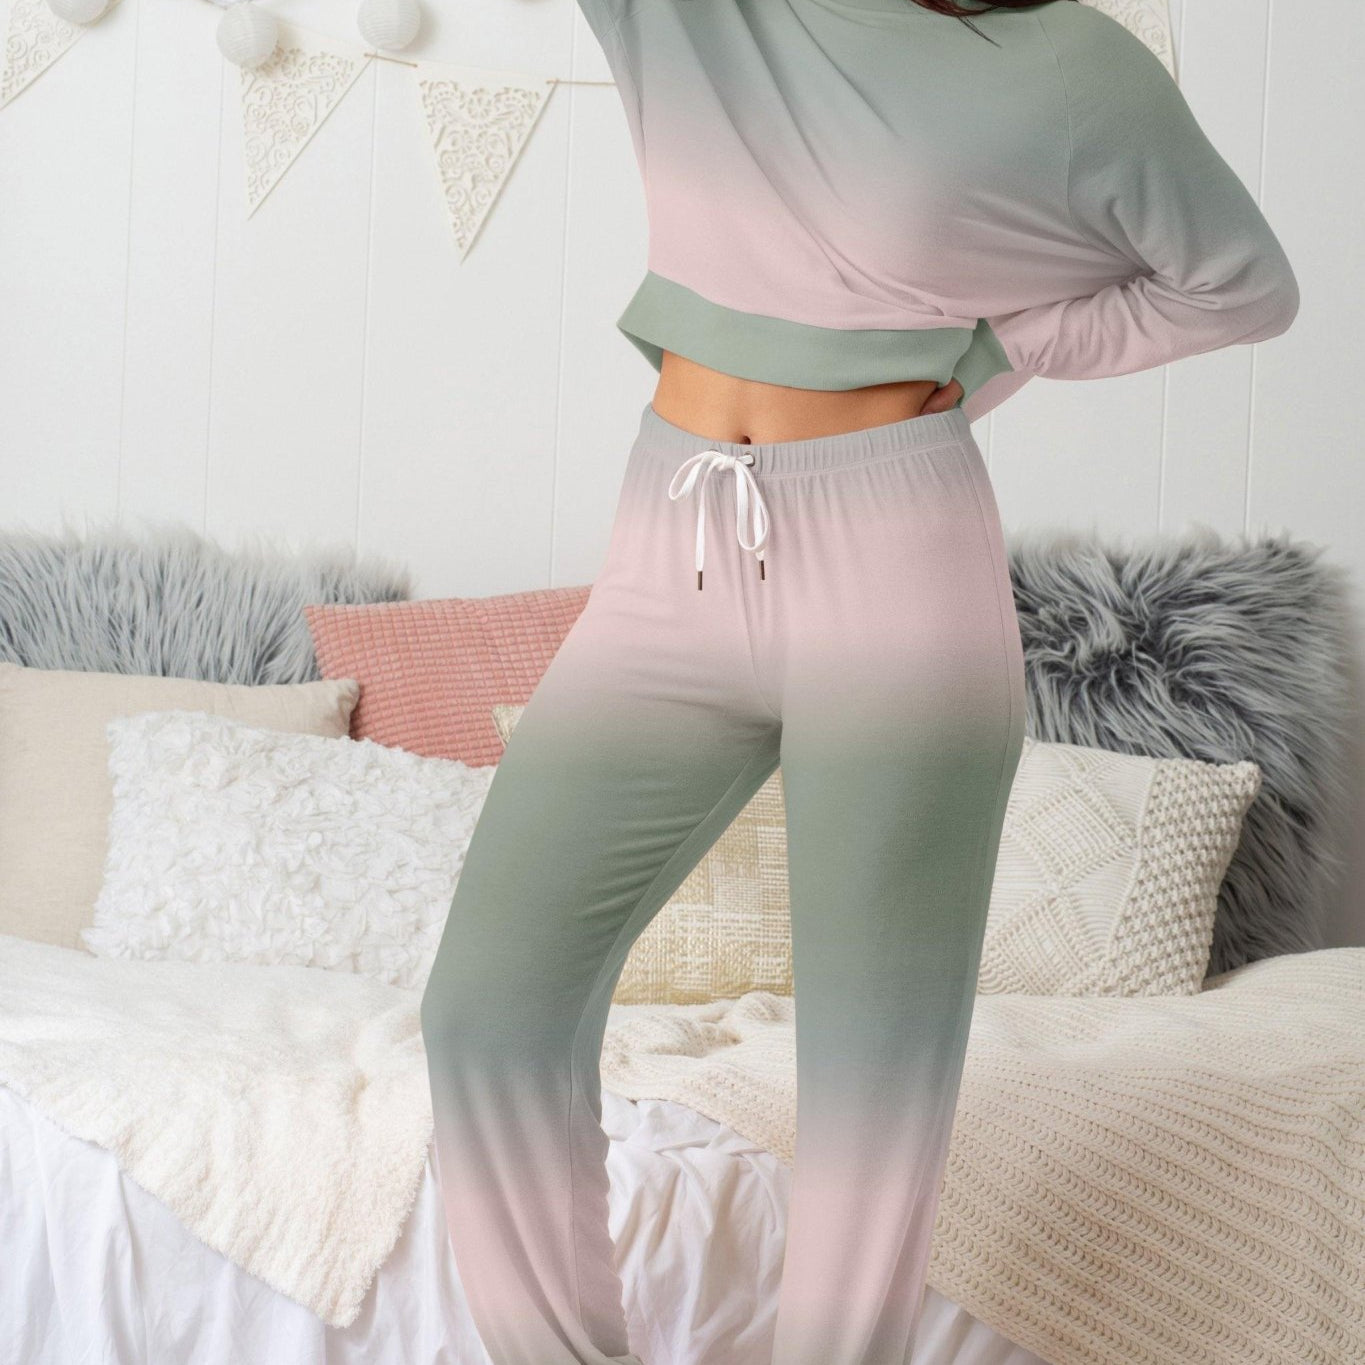 Star Seeker Long Set - Sleepwear & Loungewear - Birch Dip-Dye